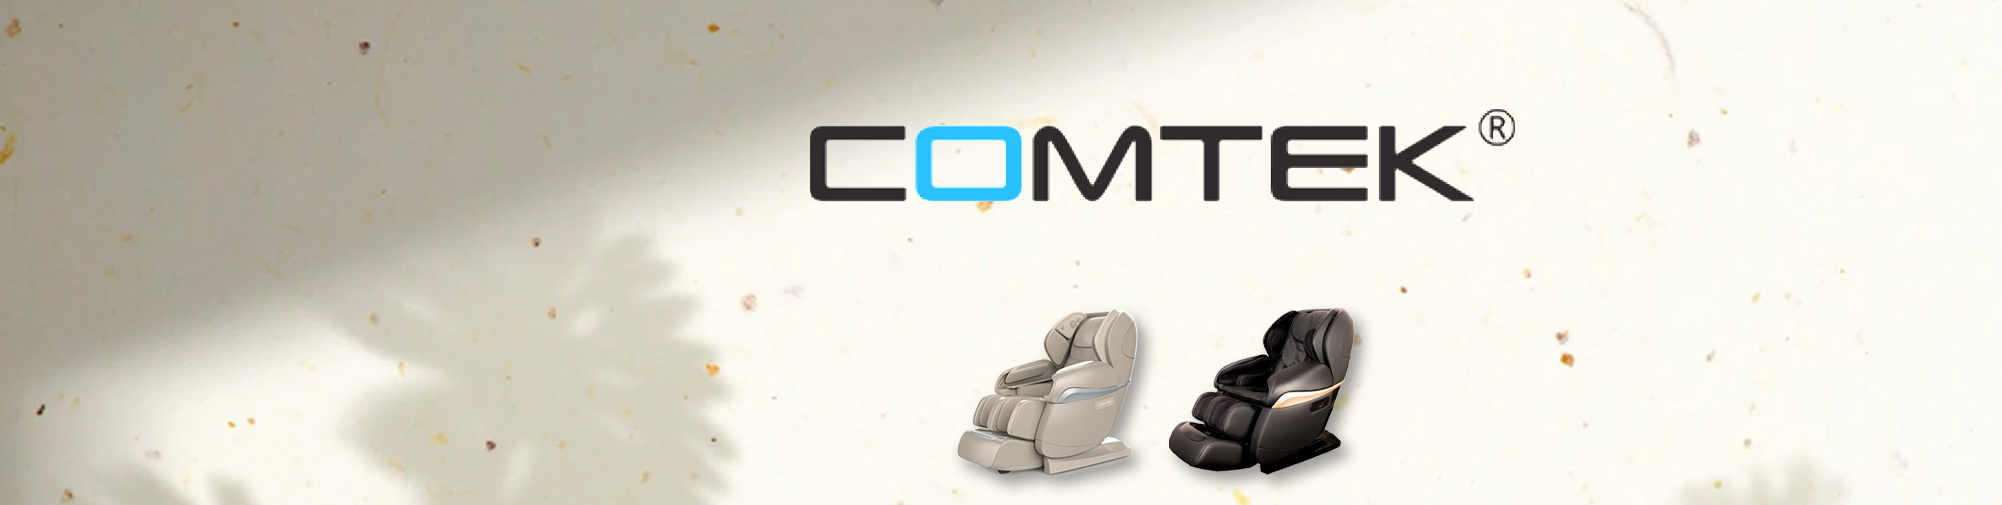 COMTEK - професионален оригинален производител | Massage Chair World